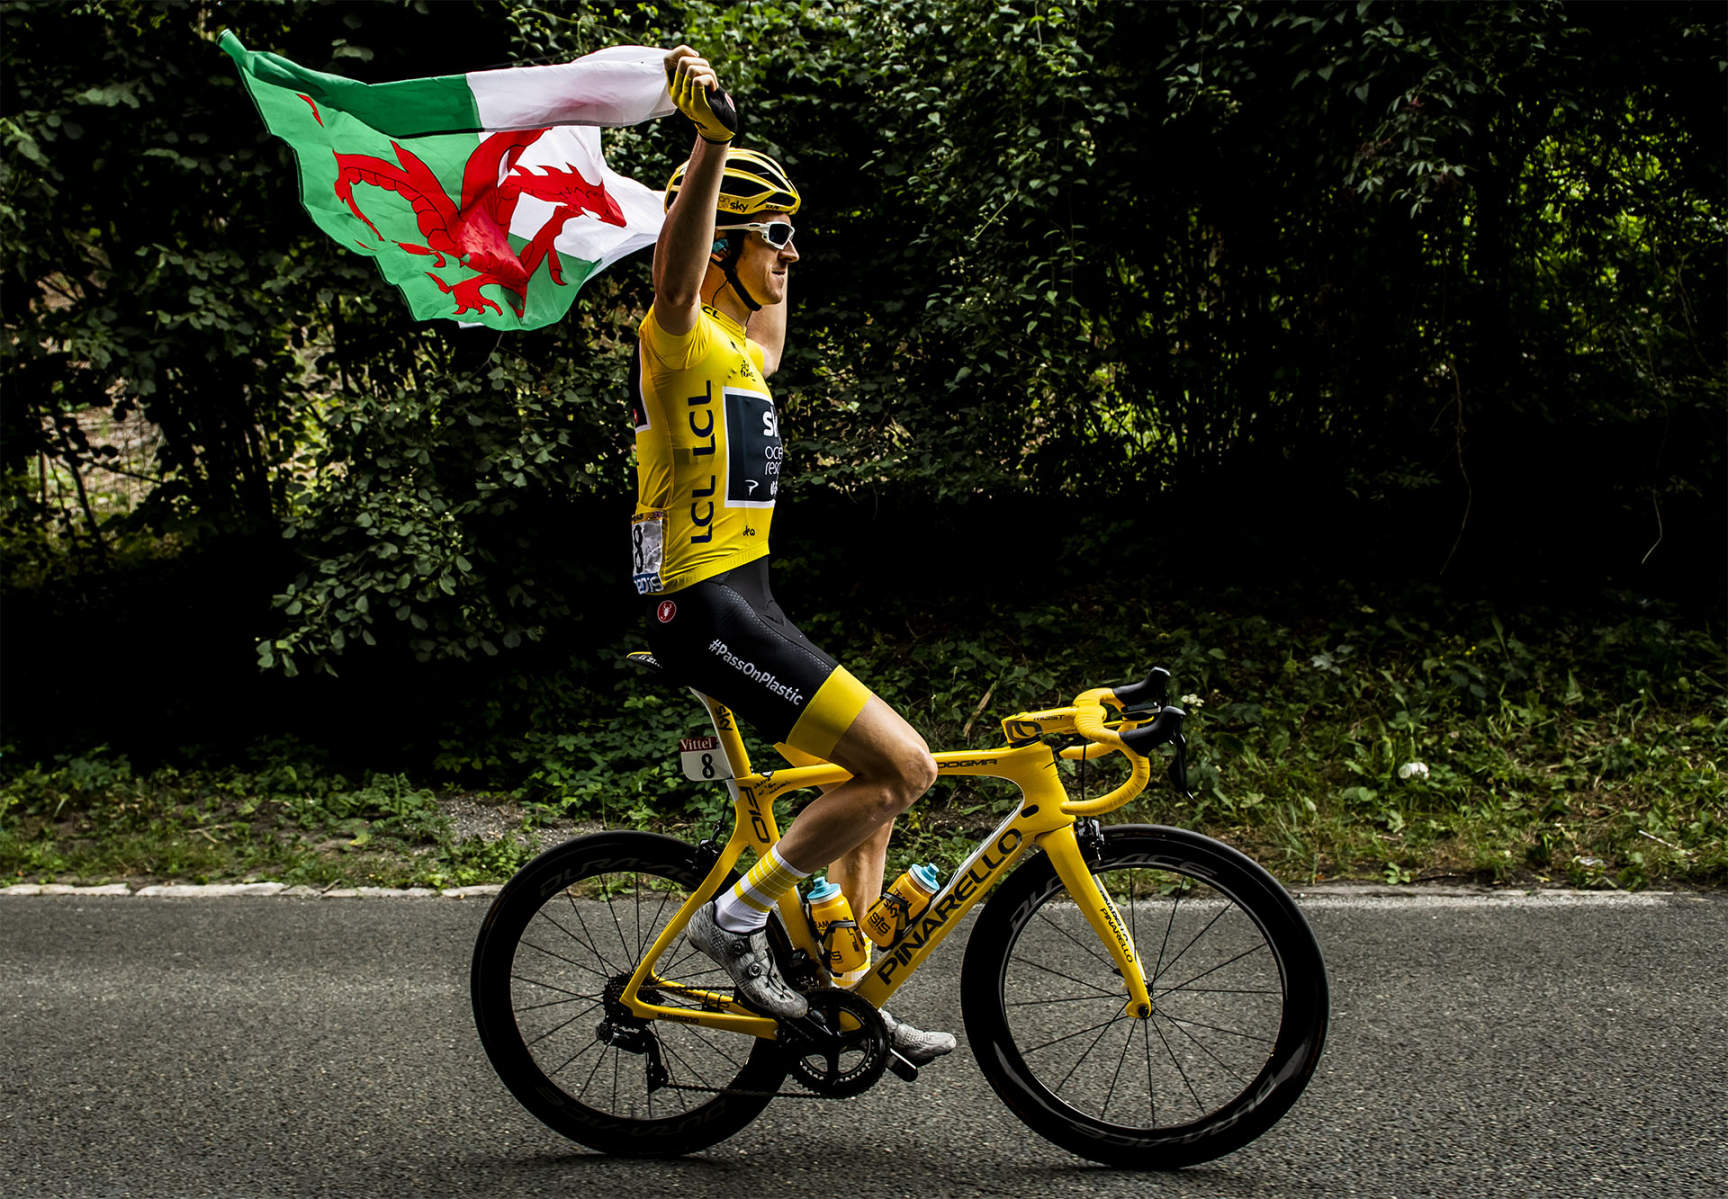 Tour de France 2018 - Stage Twenty One - Geraint Thomas celebrates 